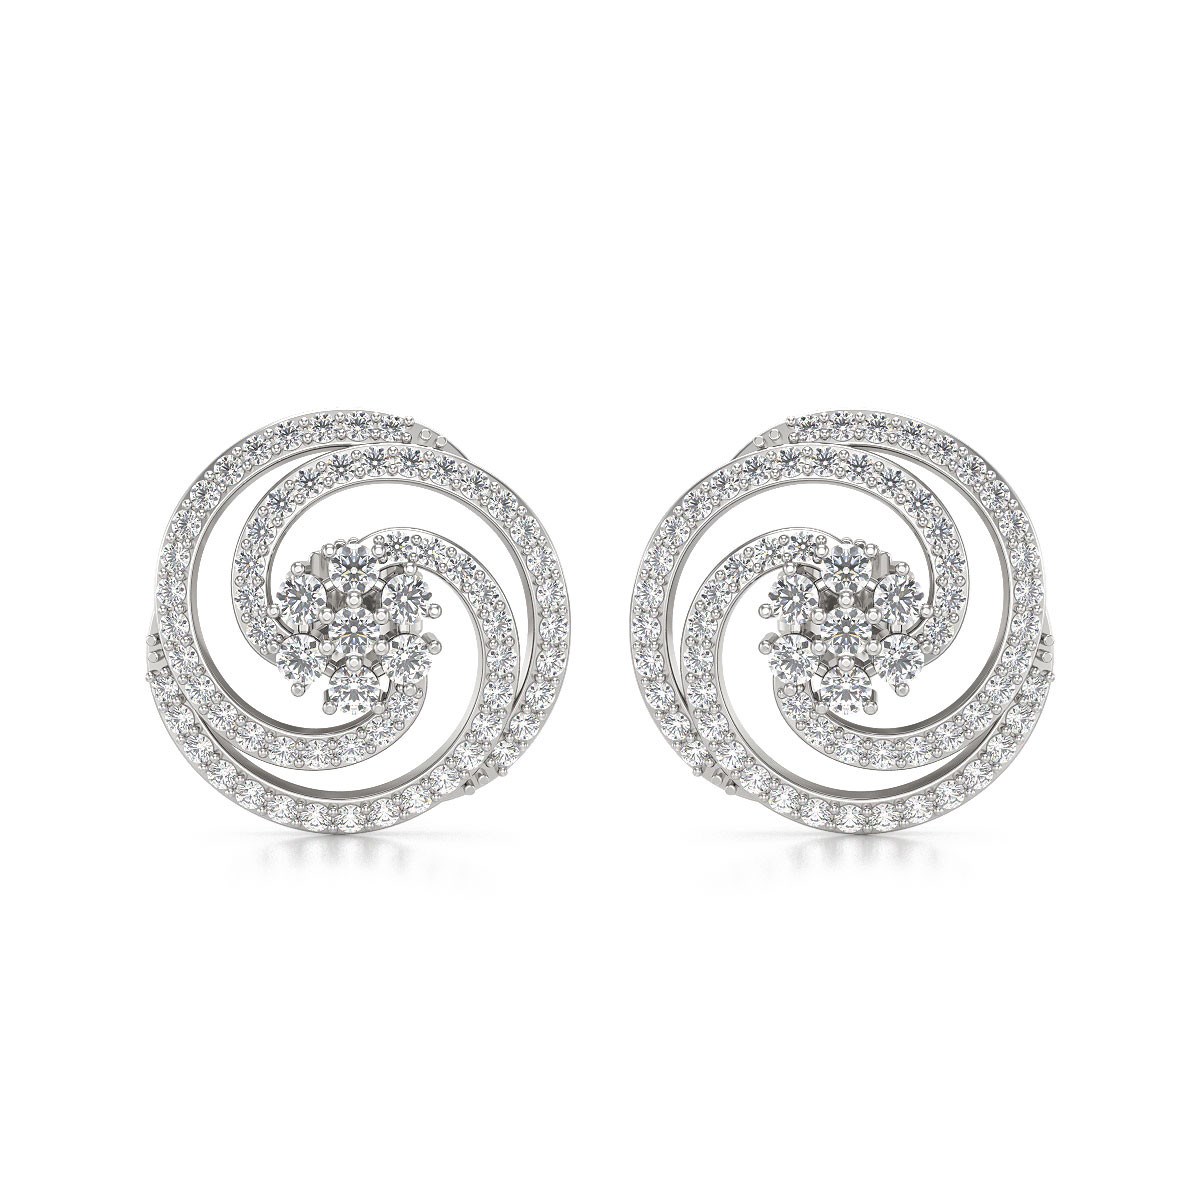 Boucles d'oreille en argent 925 et Diamants - Aden Bijoux